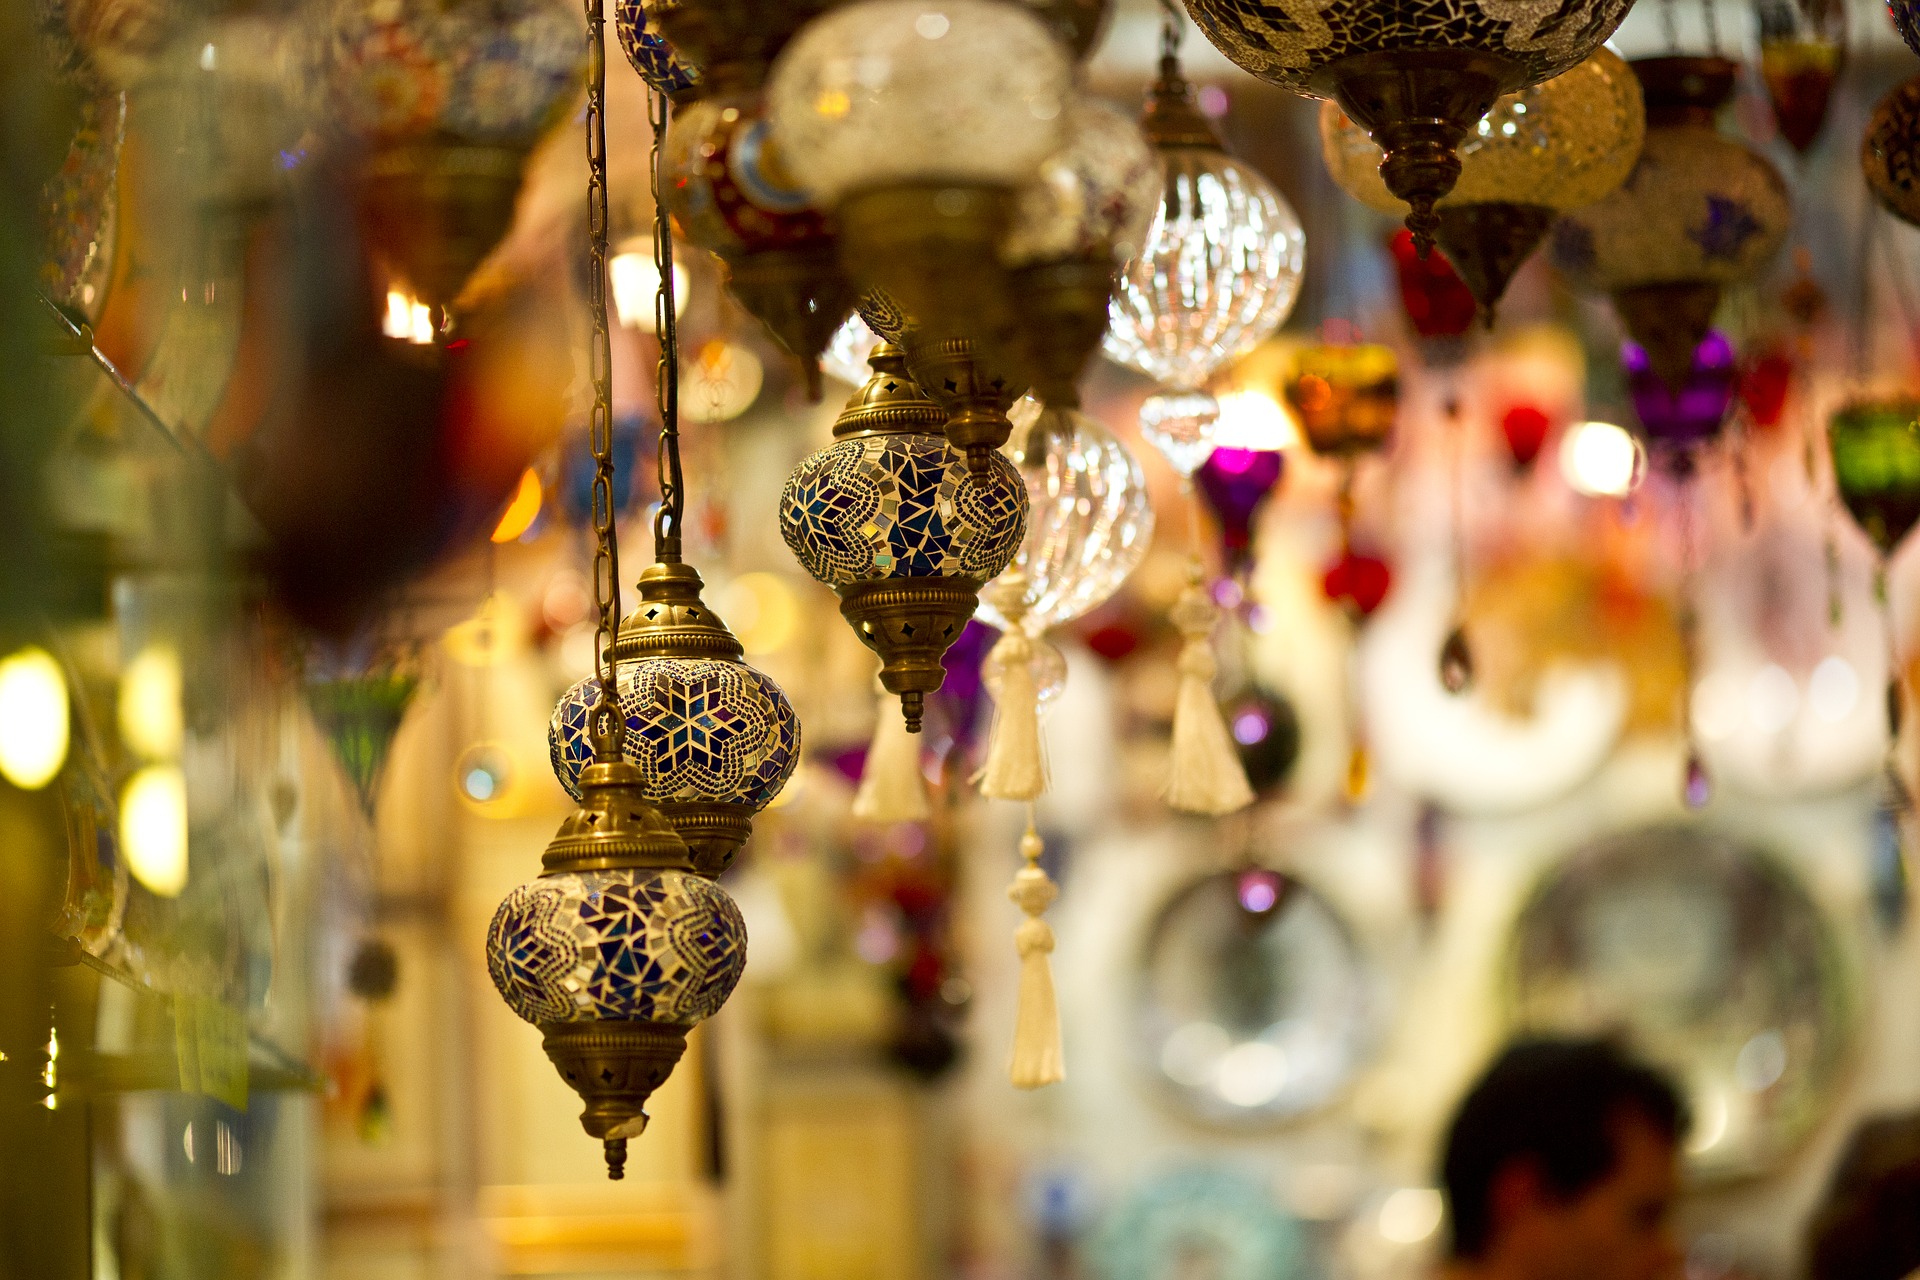 Lamps in Turkey